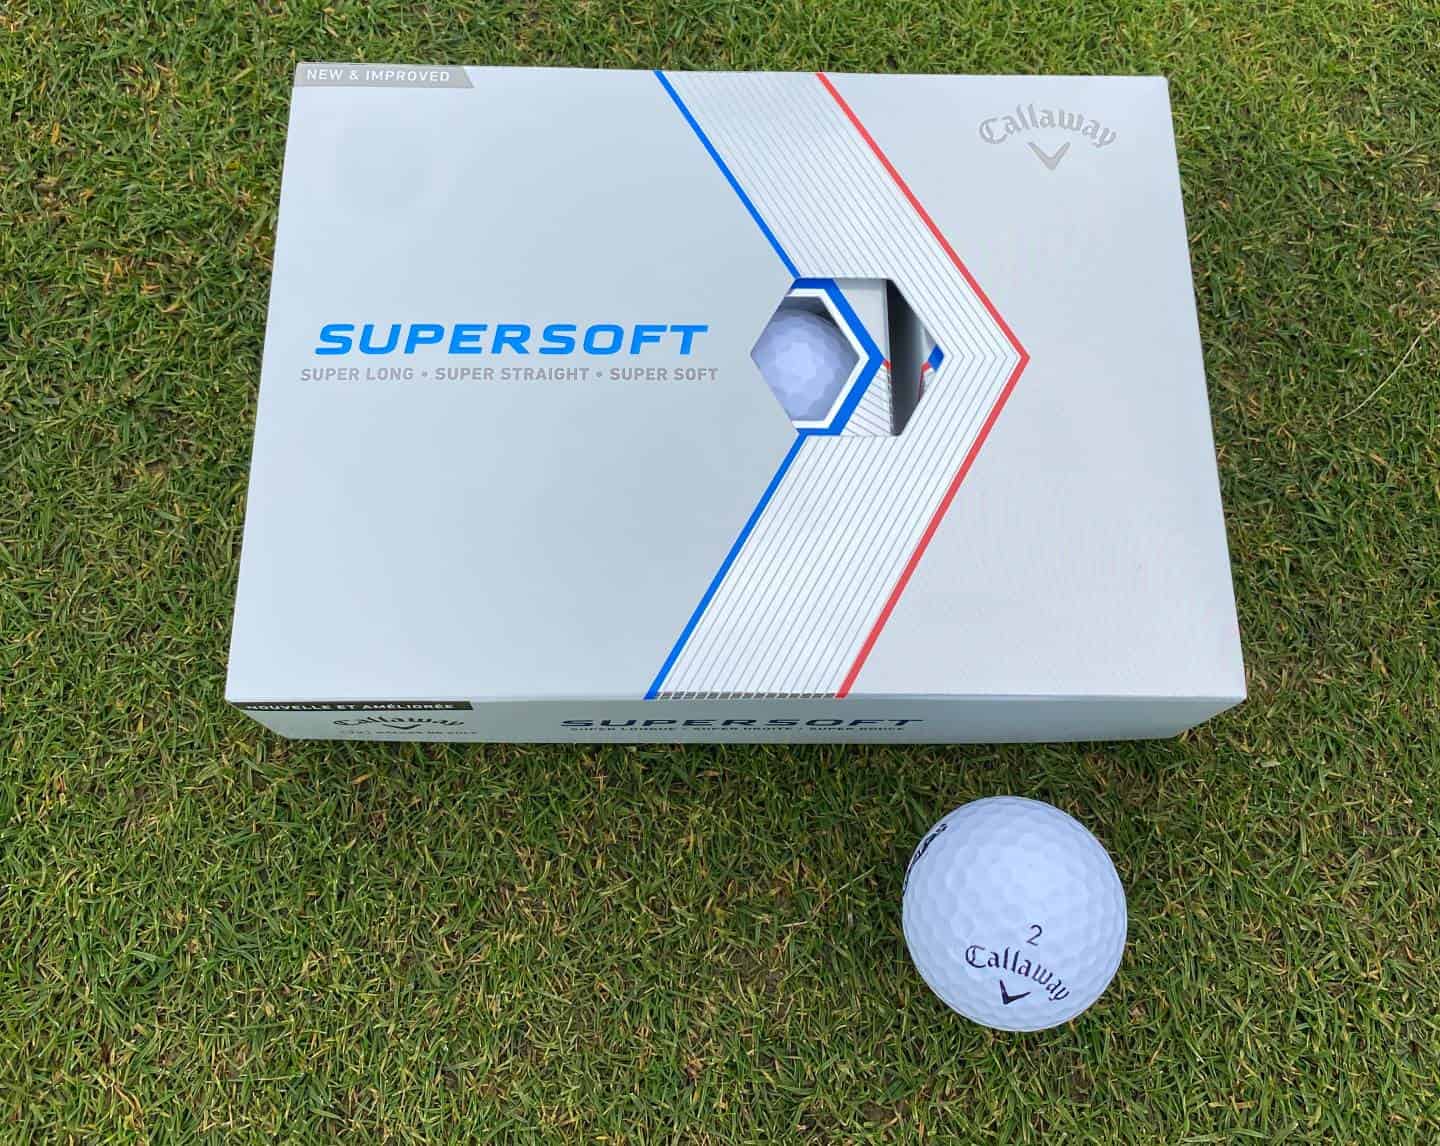 Callaway Supersoft golf ball review